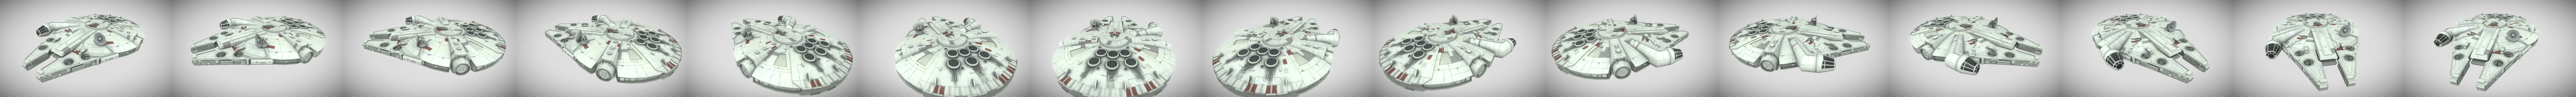 Star Wars - Halcon Milenario - Download Free 3D model by albertomarun  [d2be38f] - Sketchfab